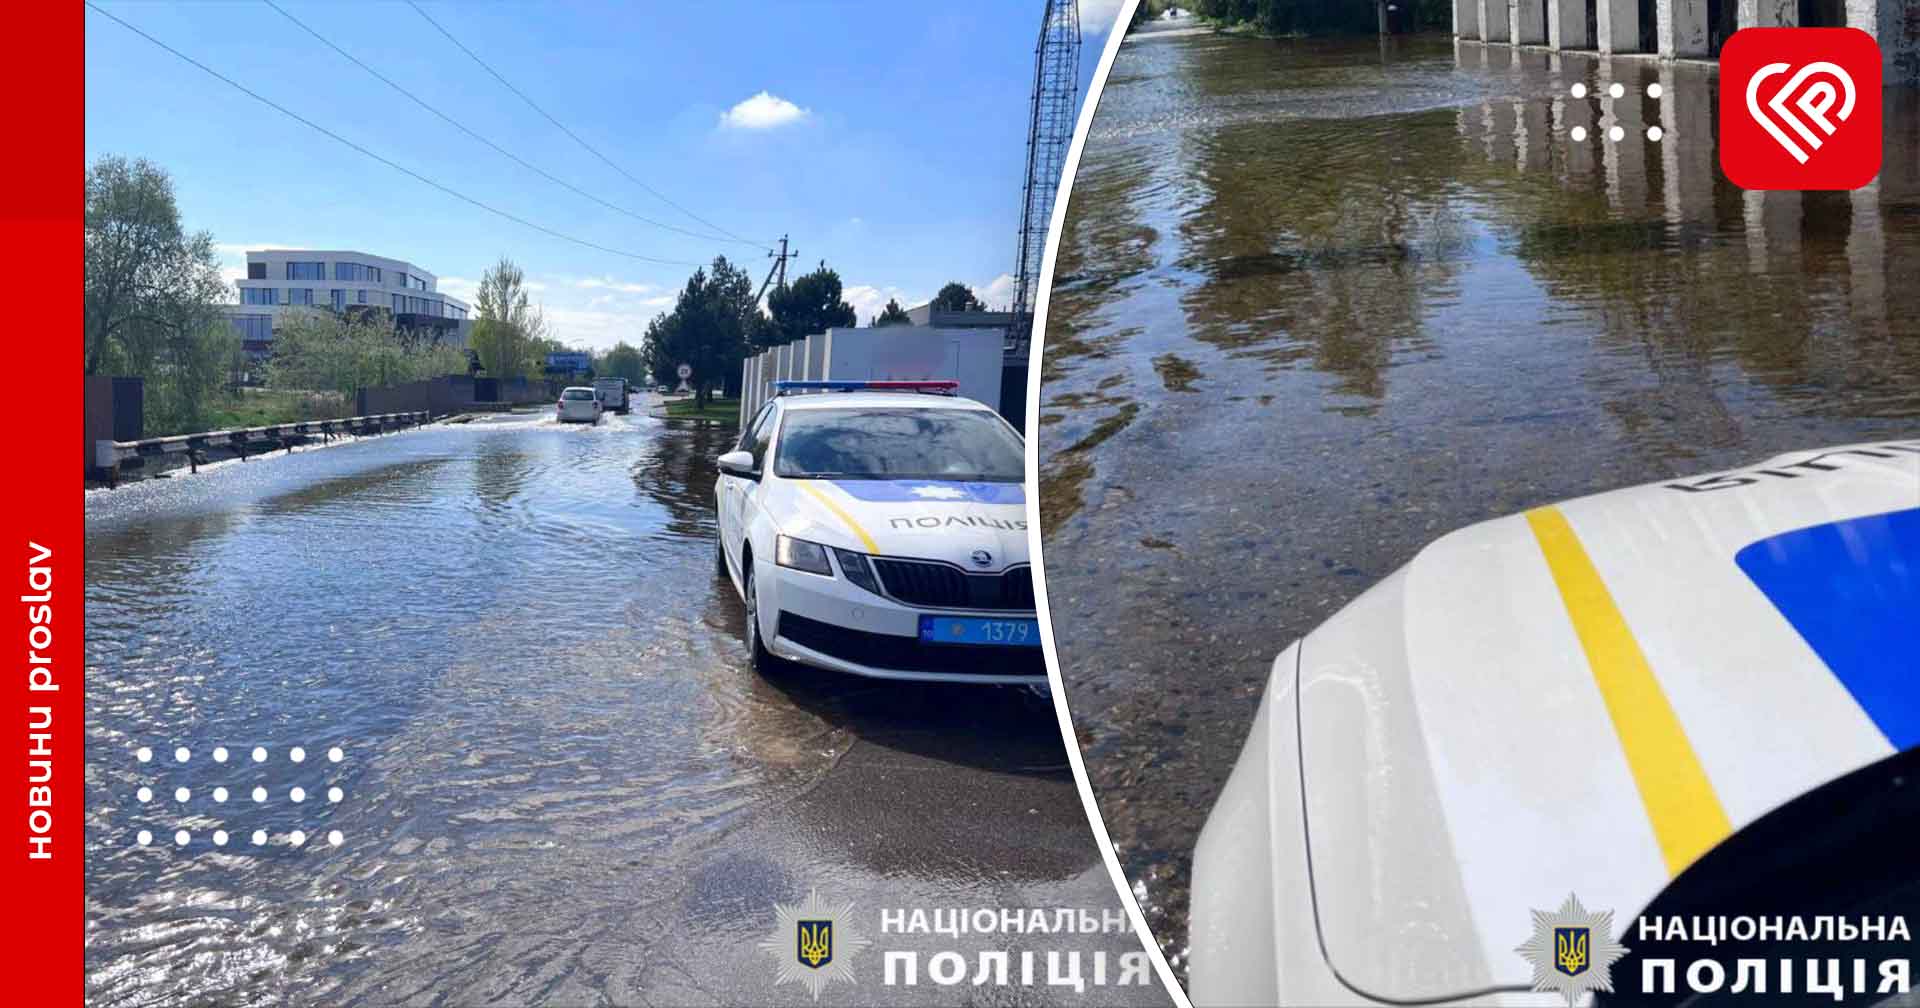 На Бориспільщині відбувся перелив води на дамбі в районі шлюзів: поліція забезпечує безпеку дорожнього руху